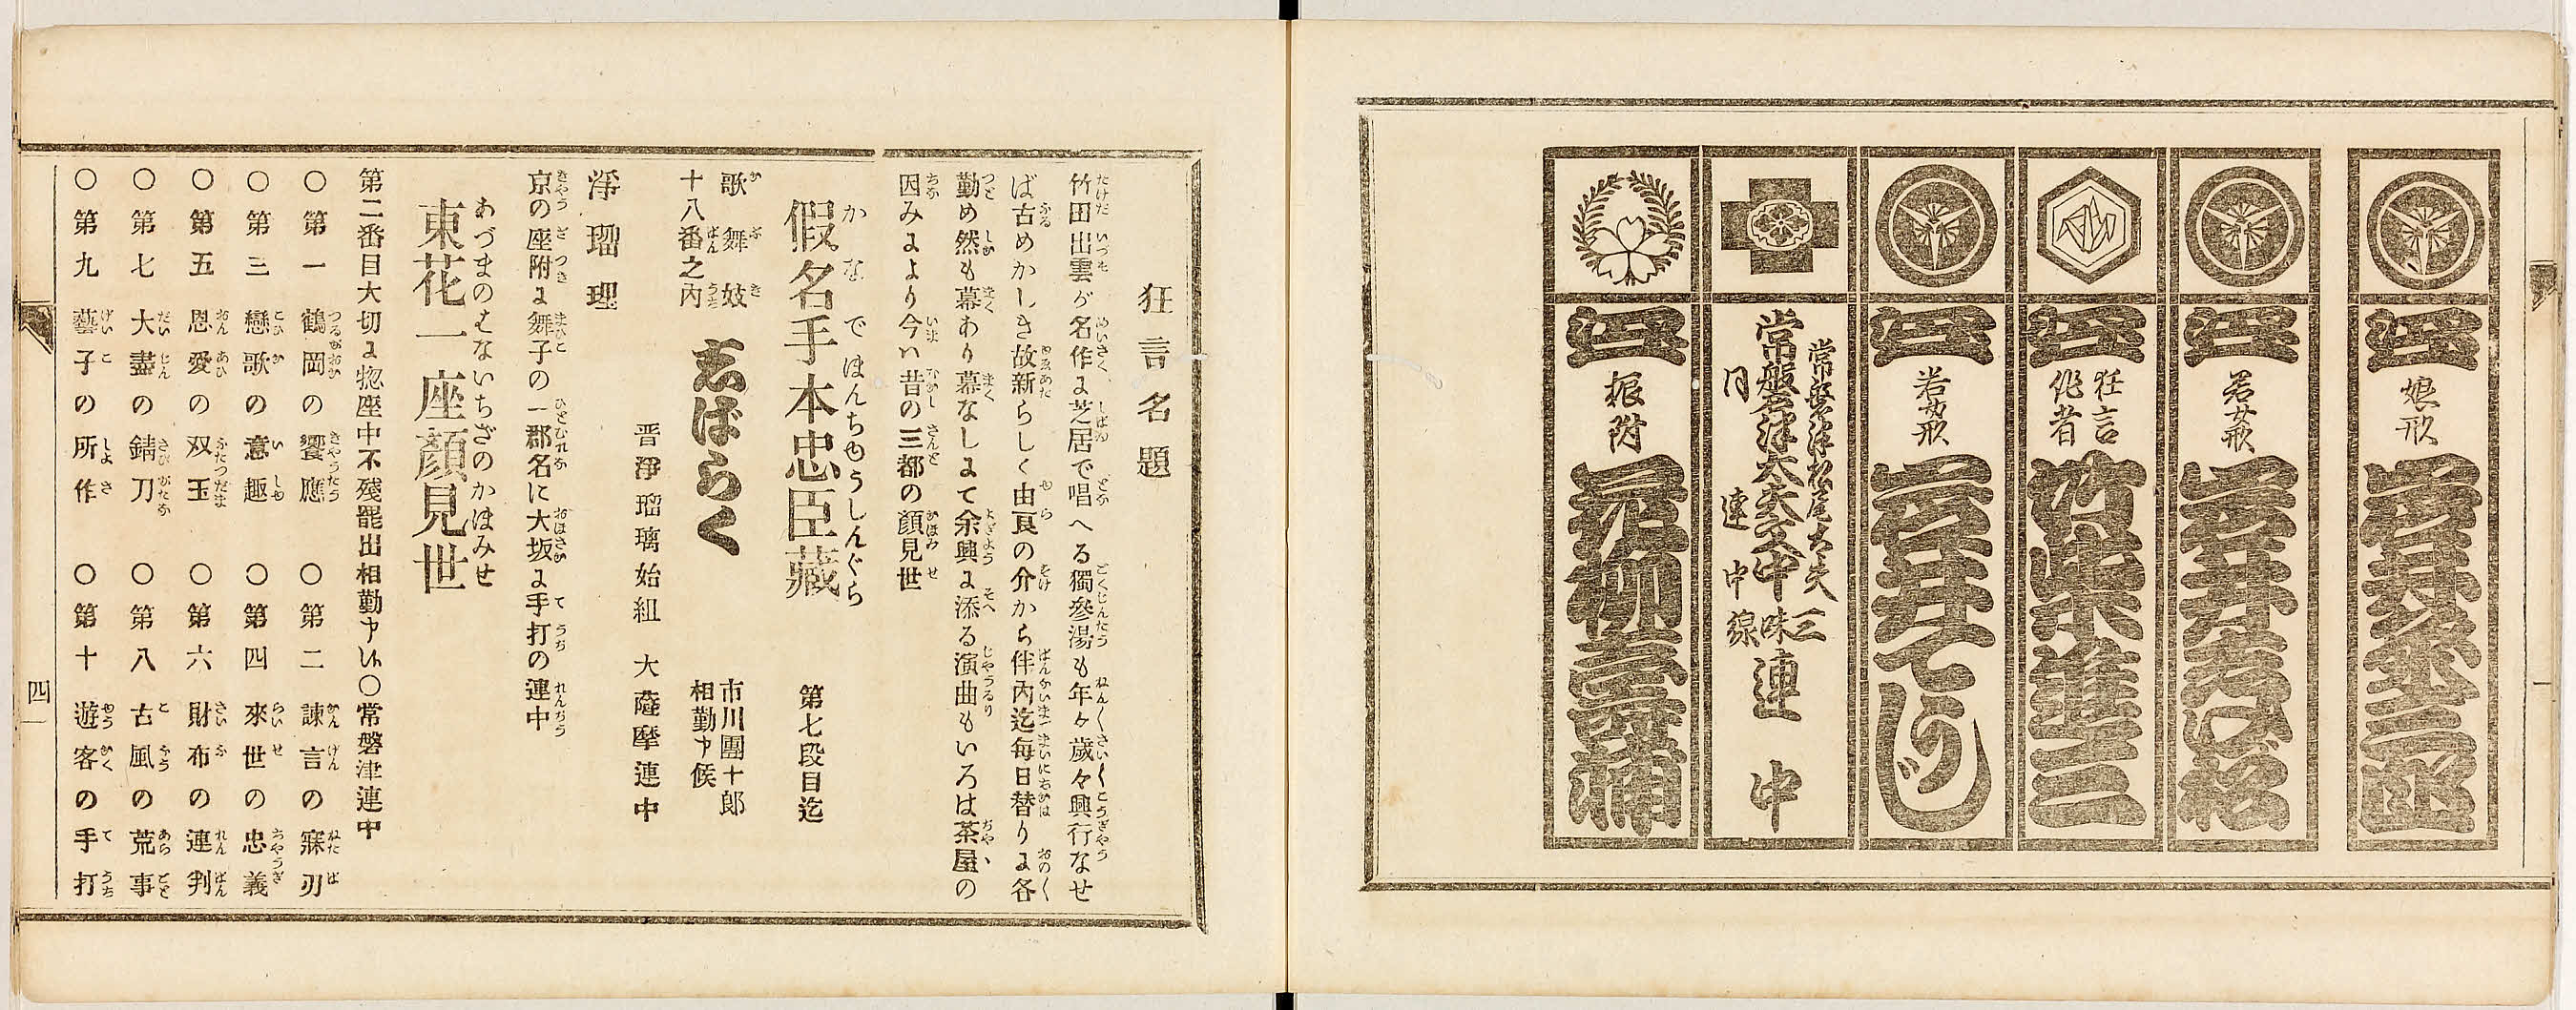 G05 Theatre Critique in Meiji Period